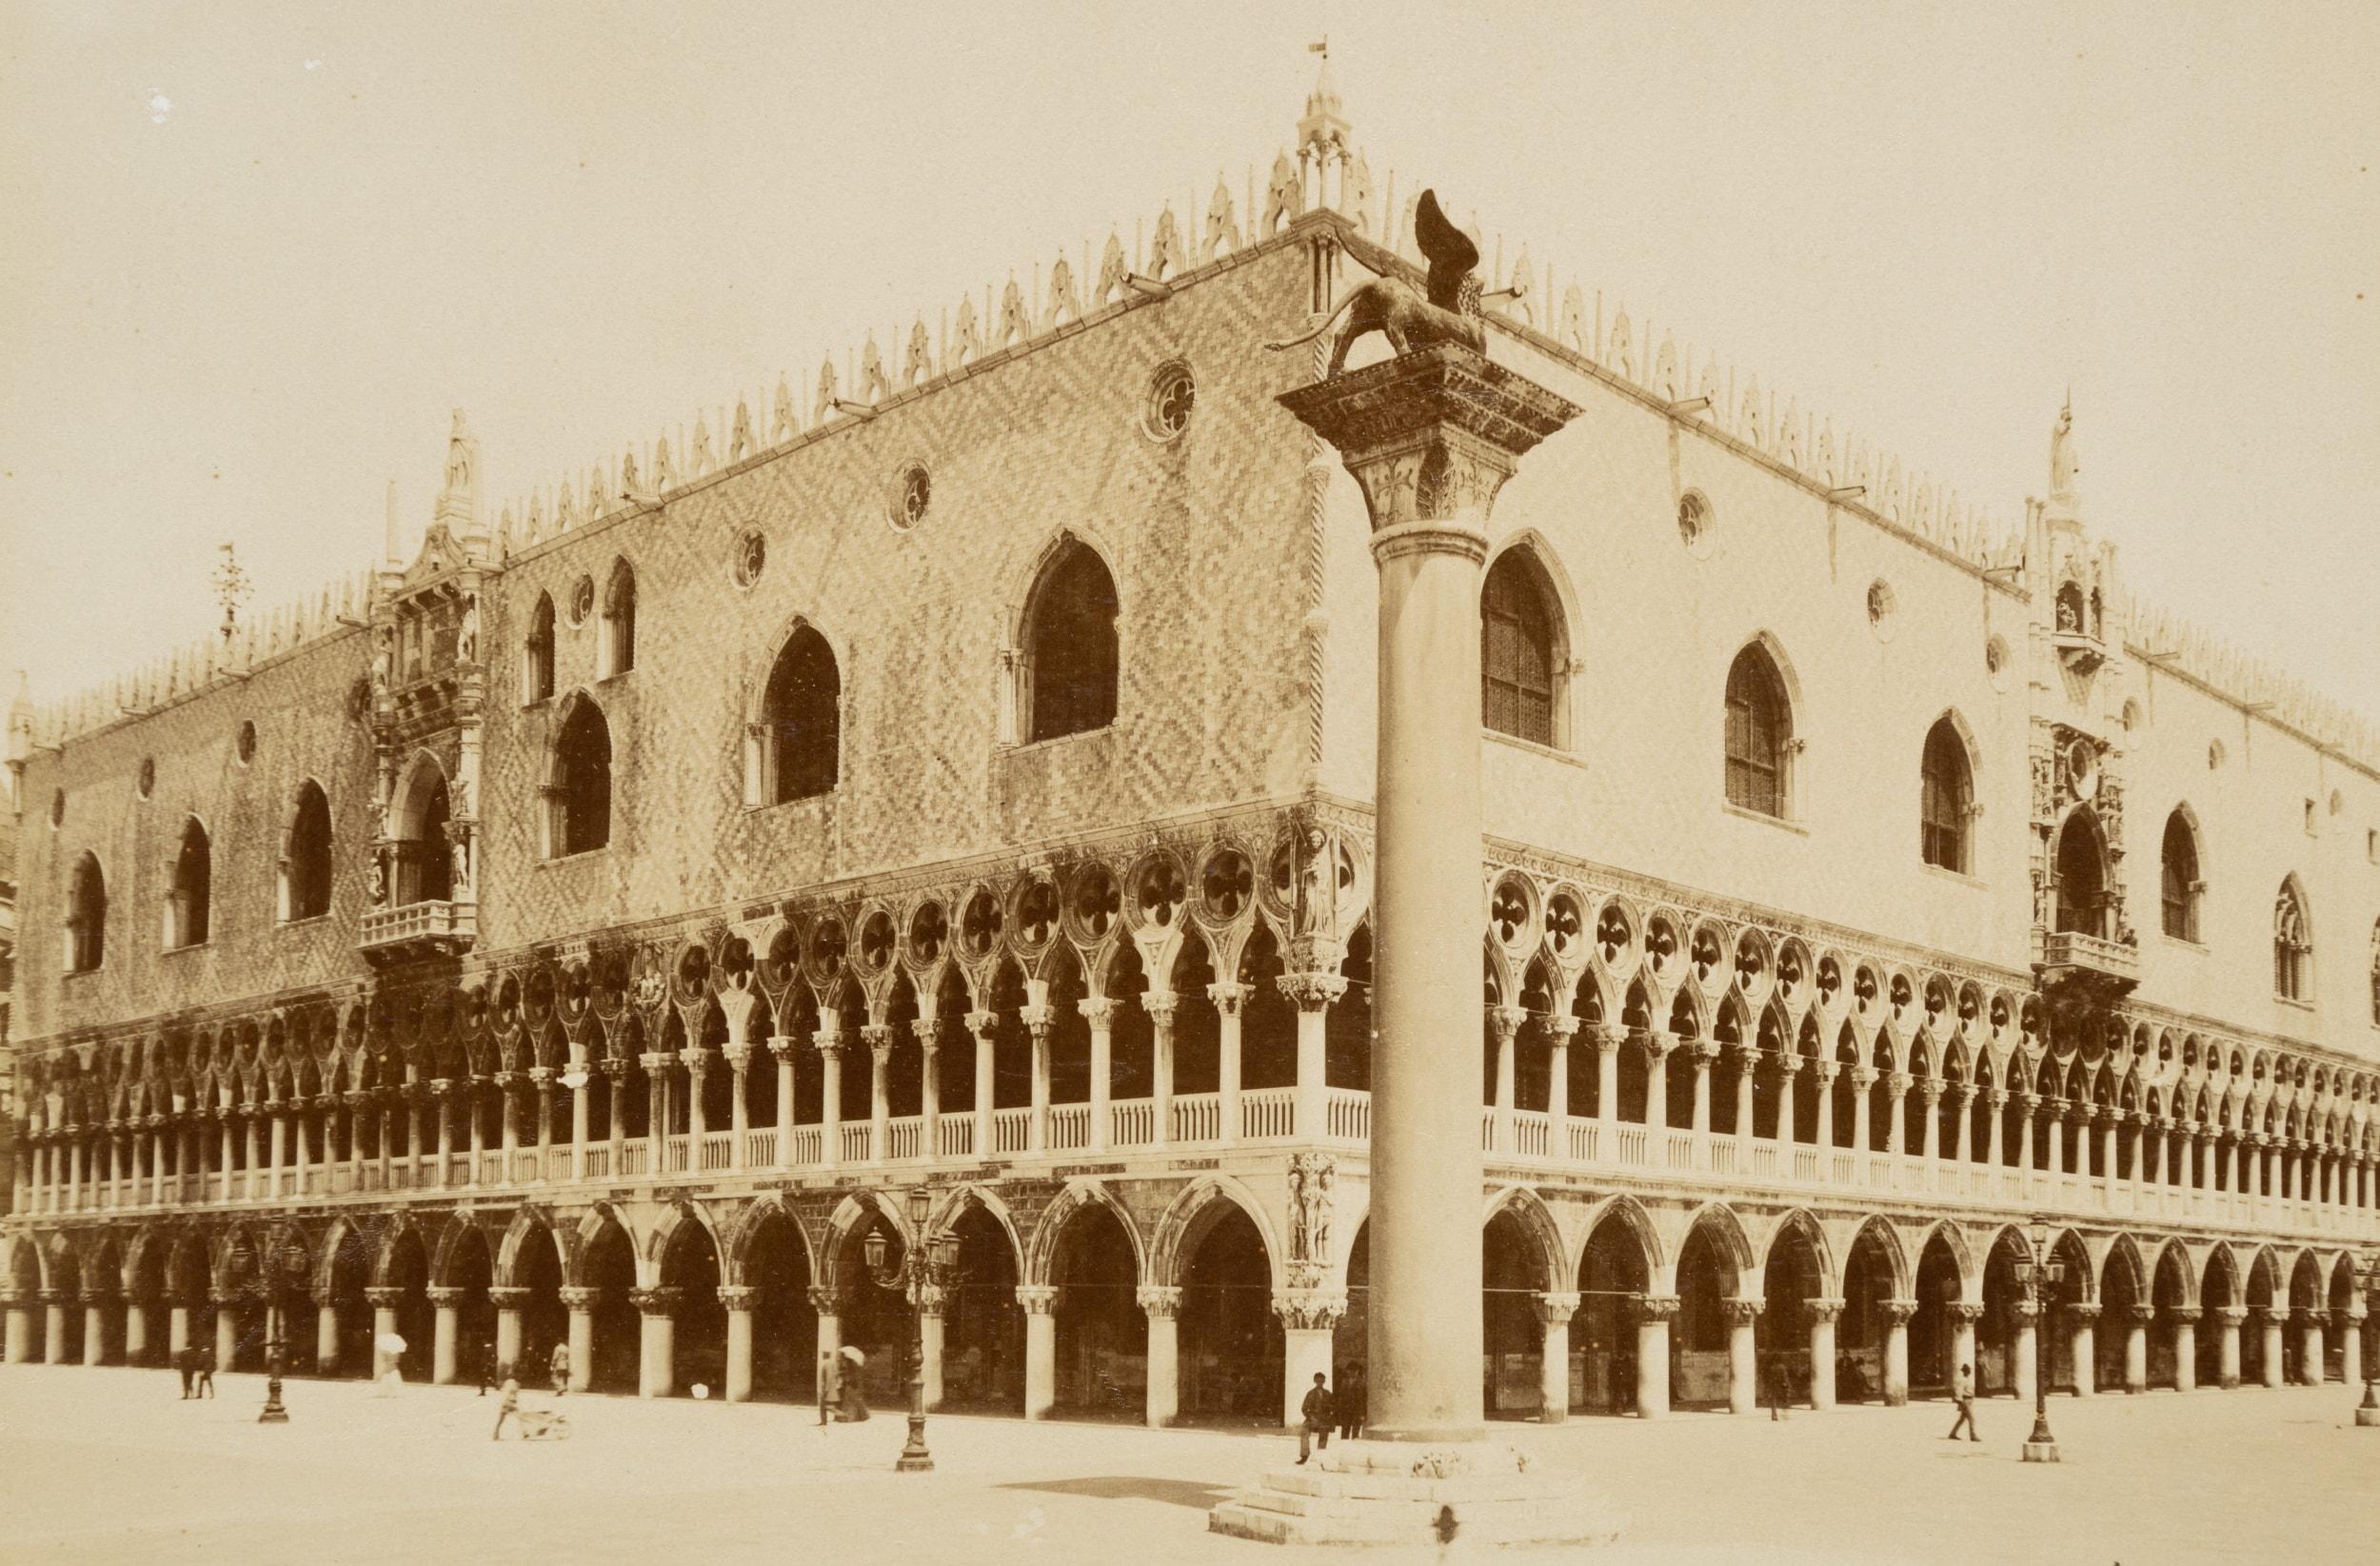 St Mark's Square, Doge's Palace, Venice - Photograph by Carlo Naya